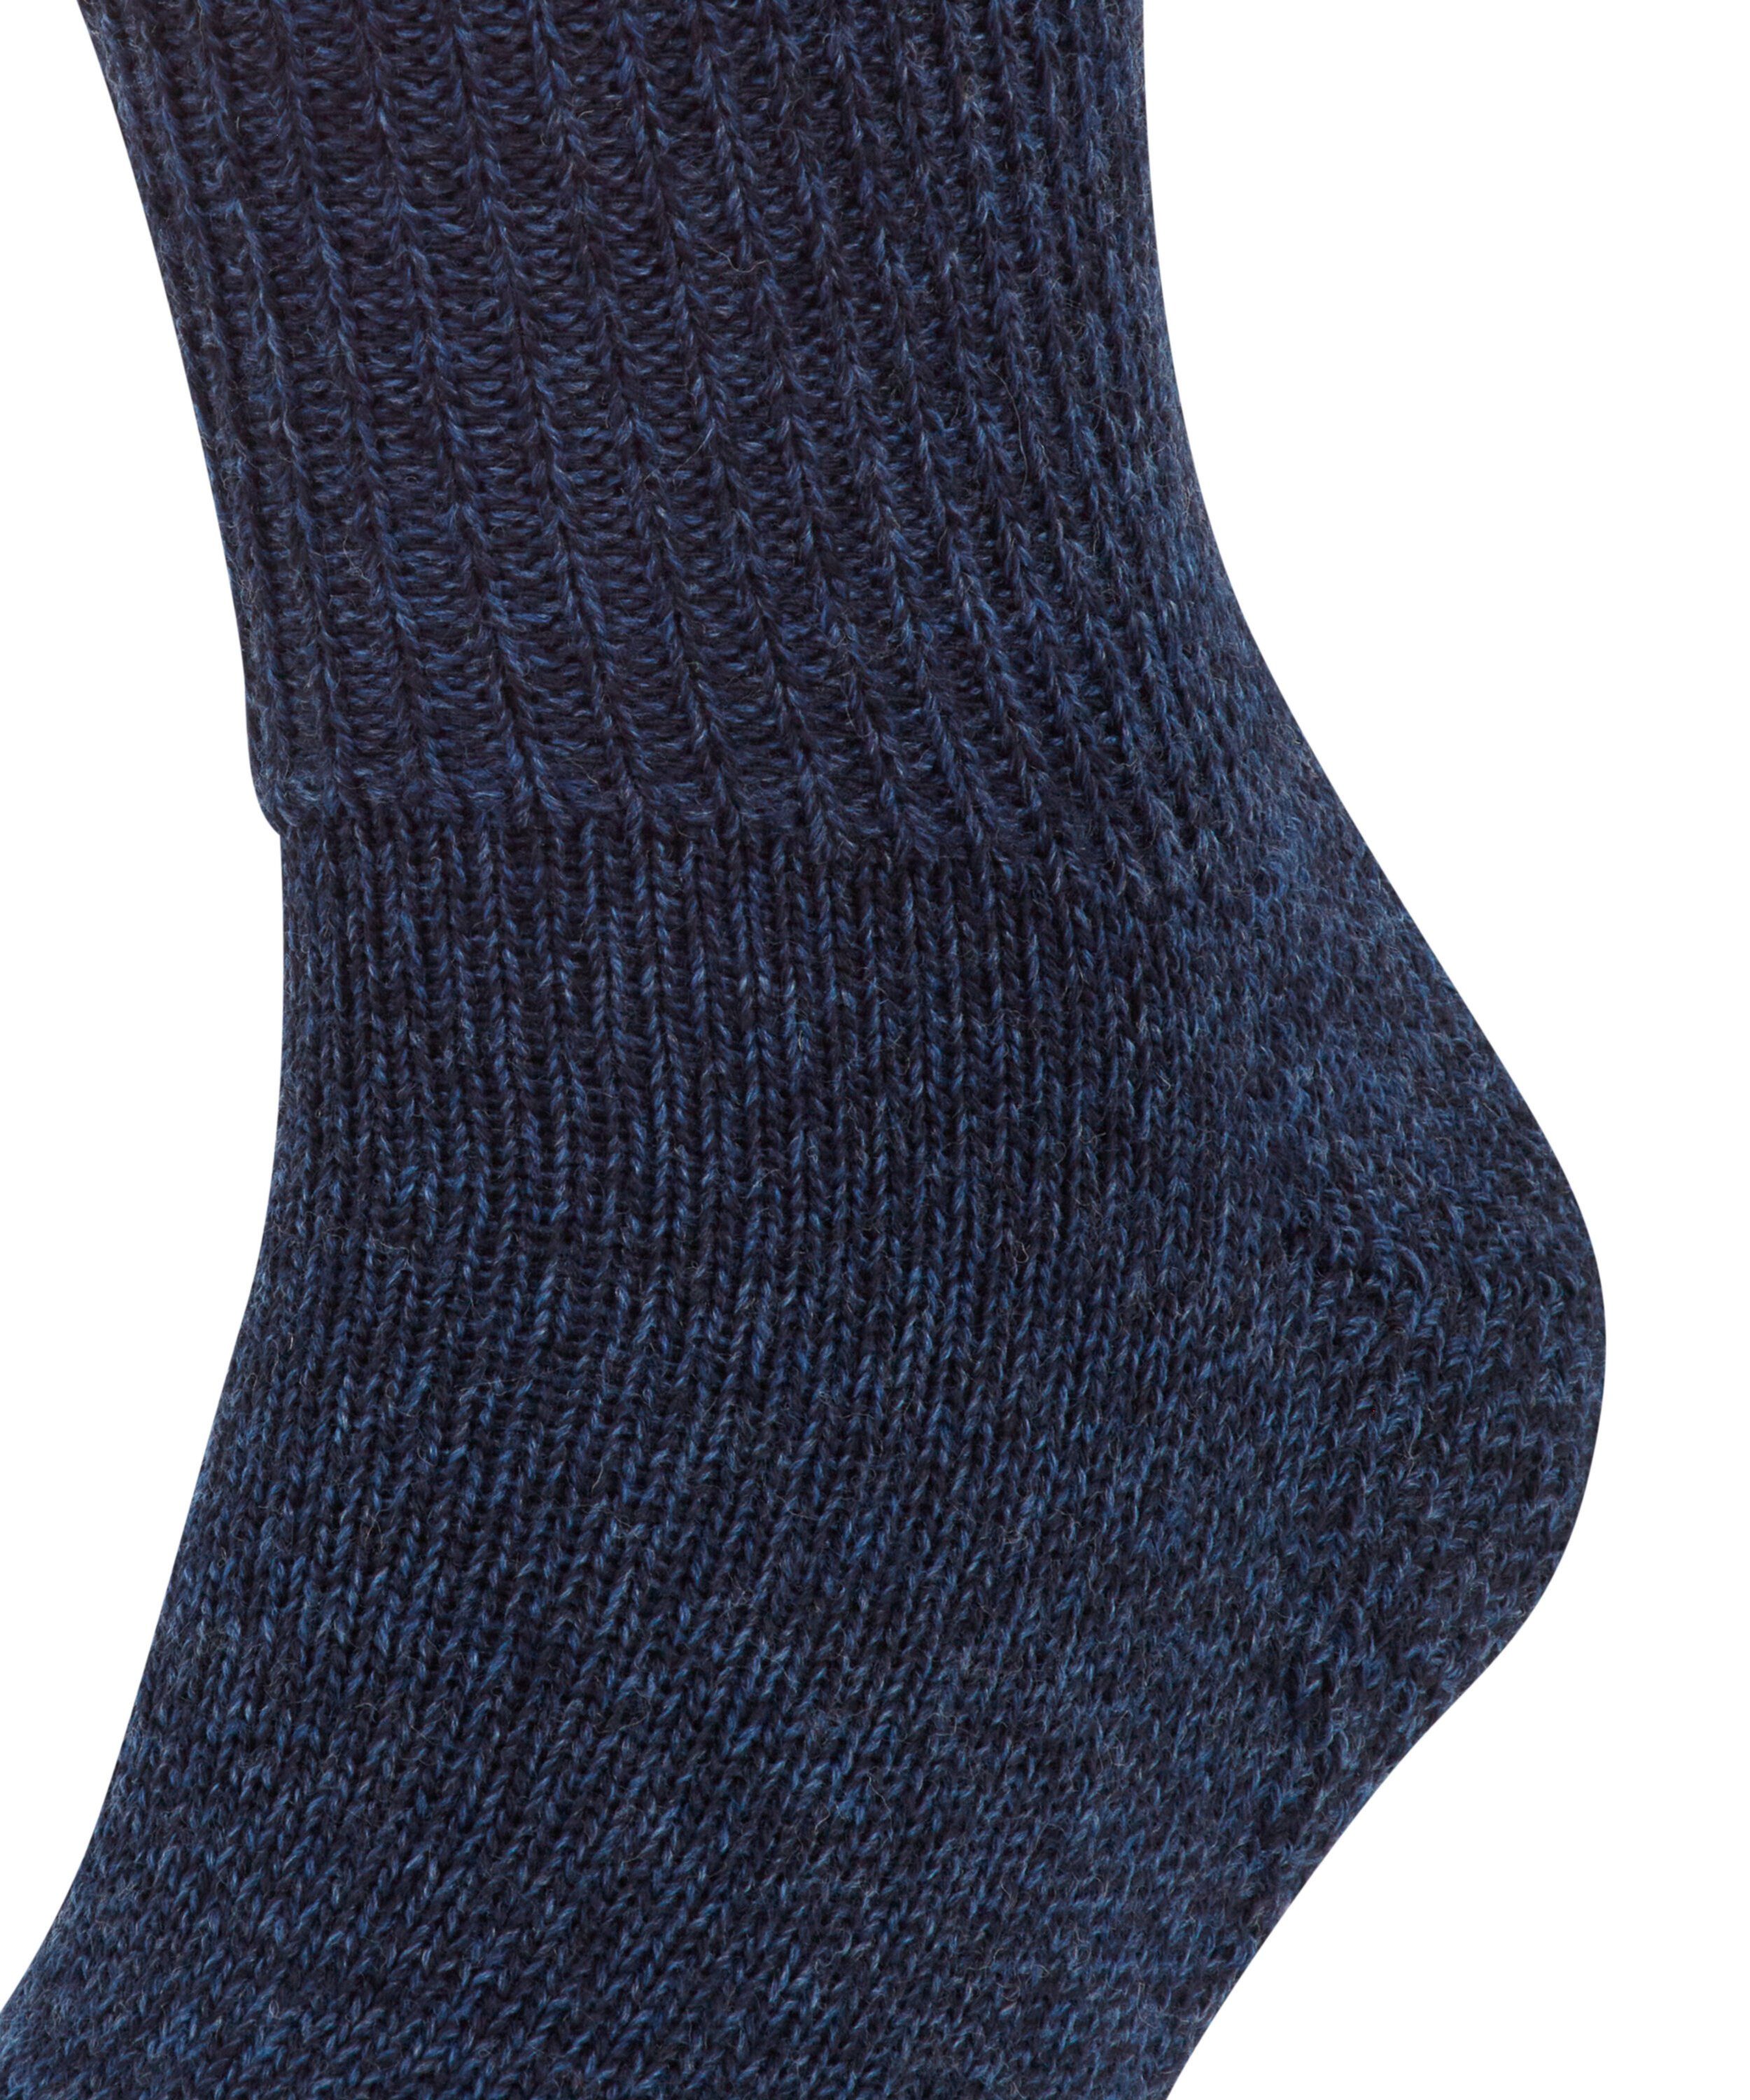 (6670) jeans FALKE Socken Walkie Ergo (1-Paar)